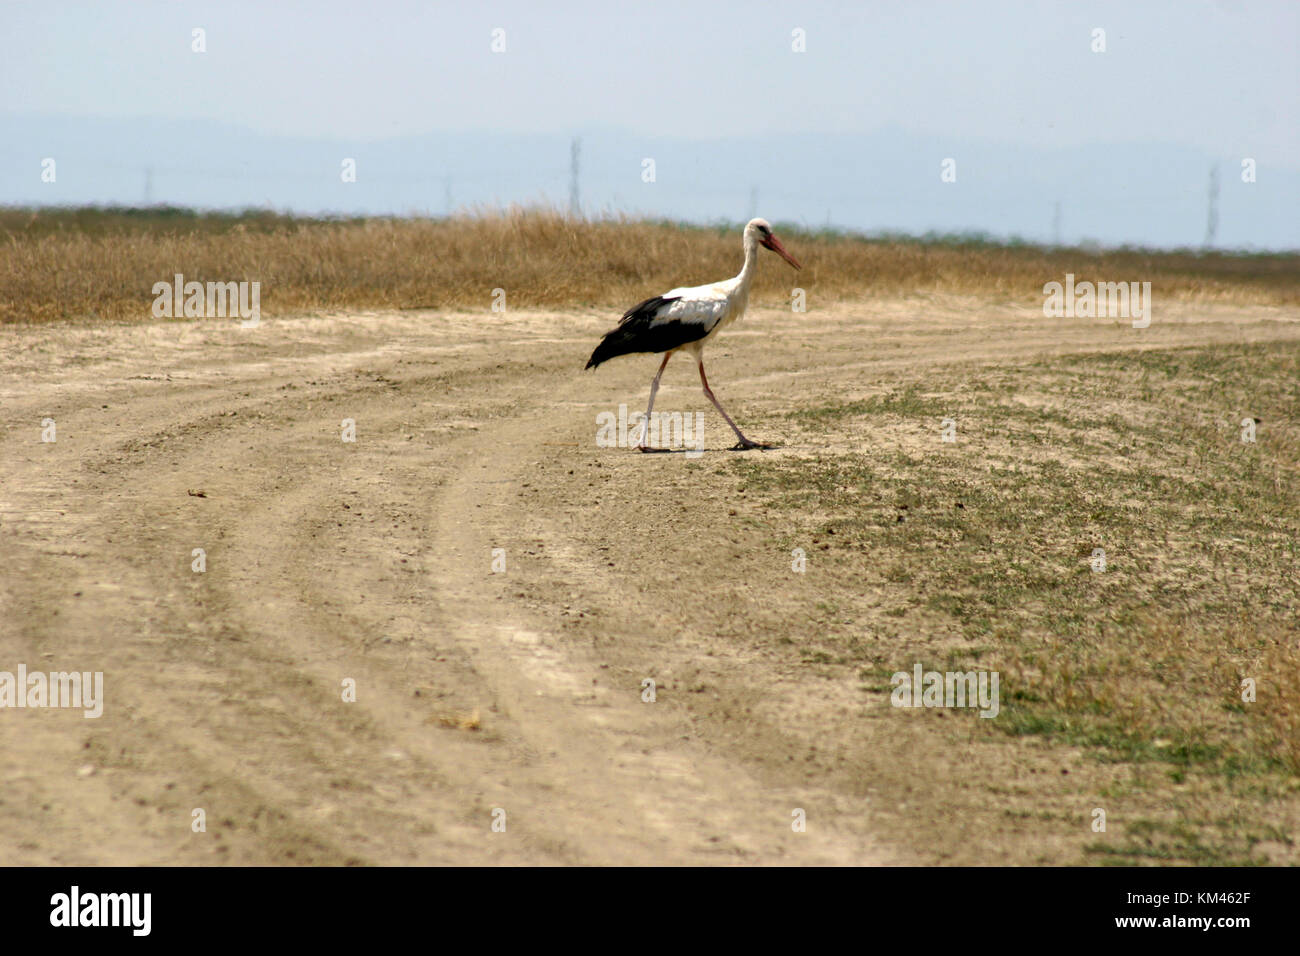 European white storks walking Stock Photo